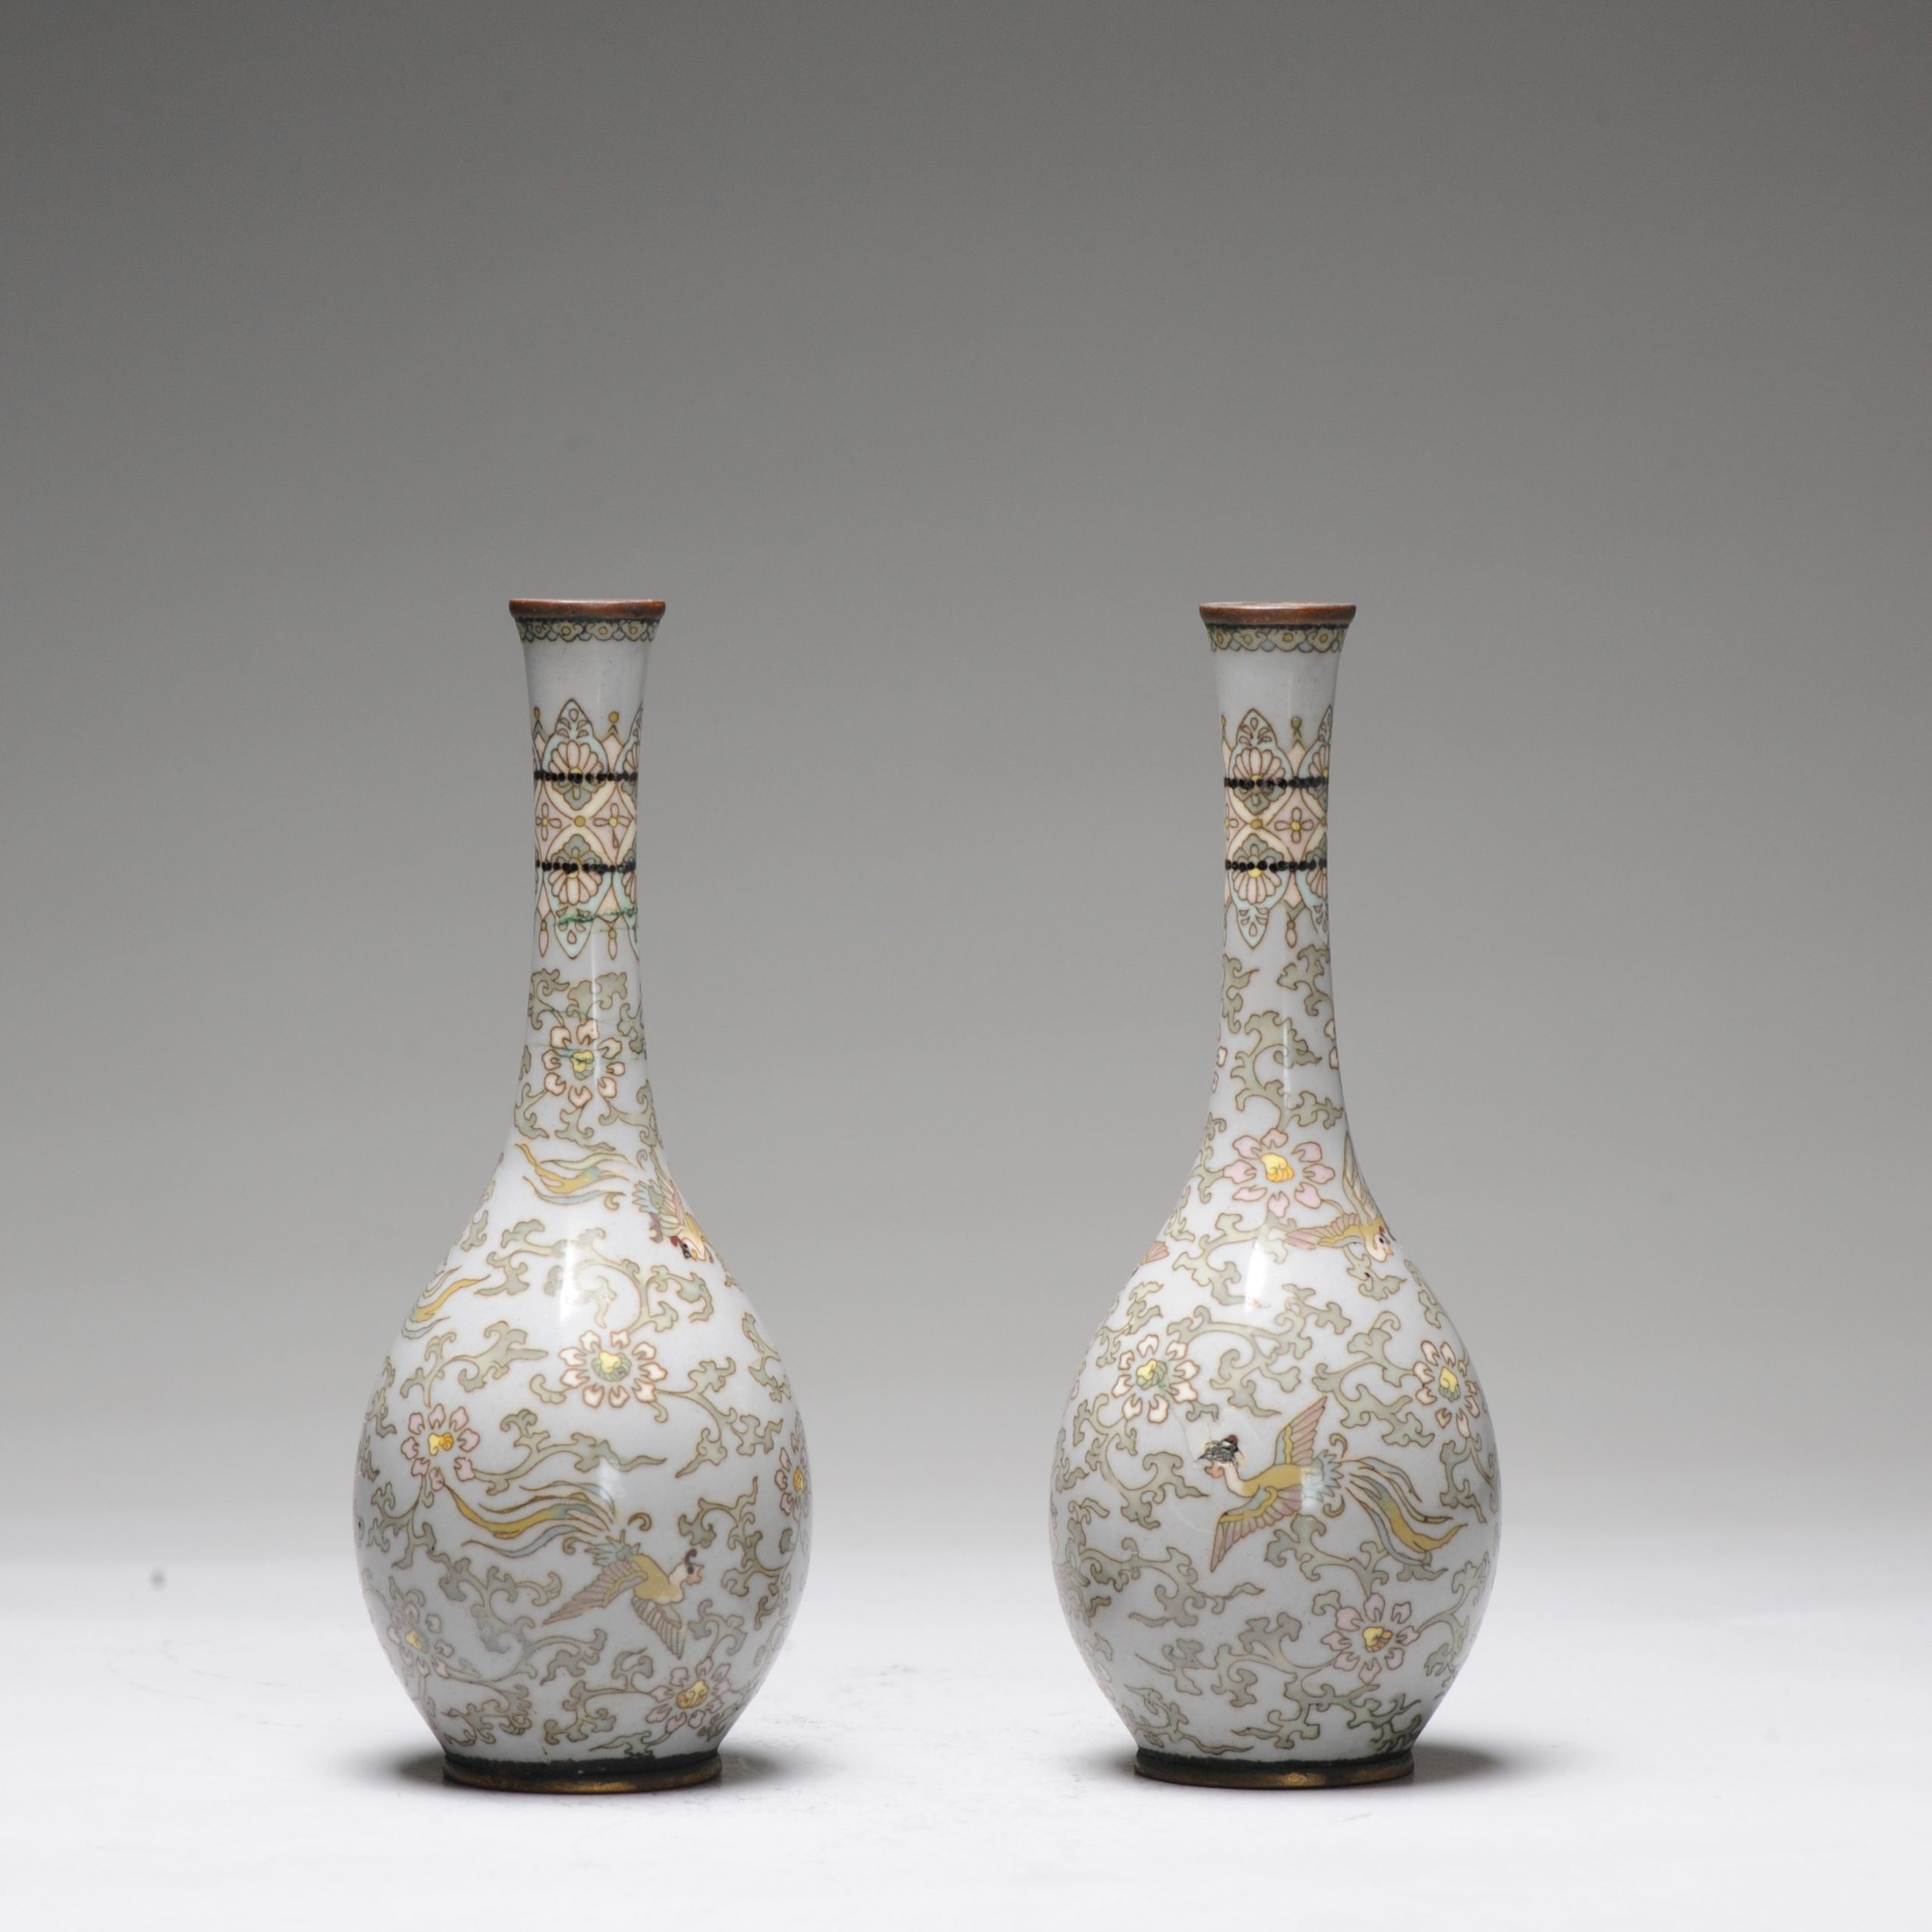 Pair Antique Bronze Vase Cloisonné Japan Meiji 19th century Japanese